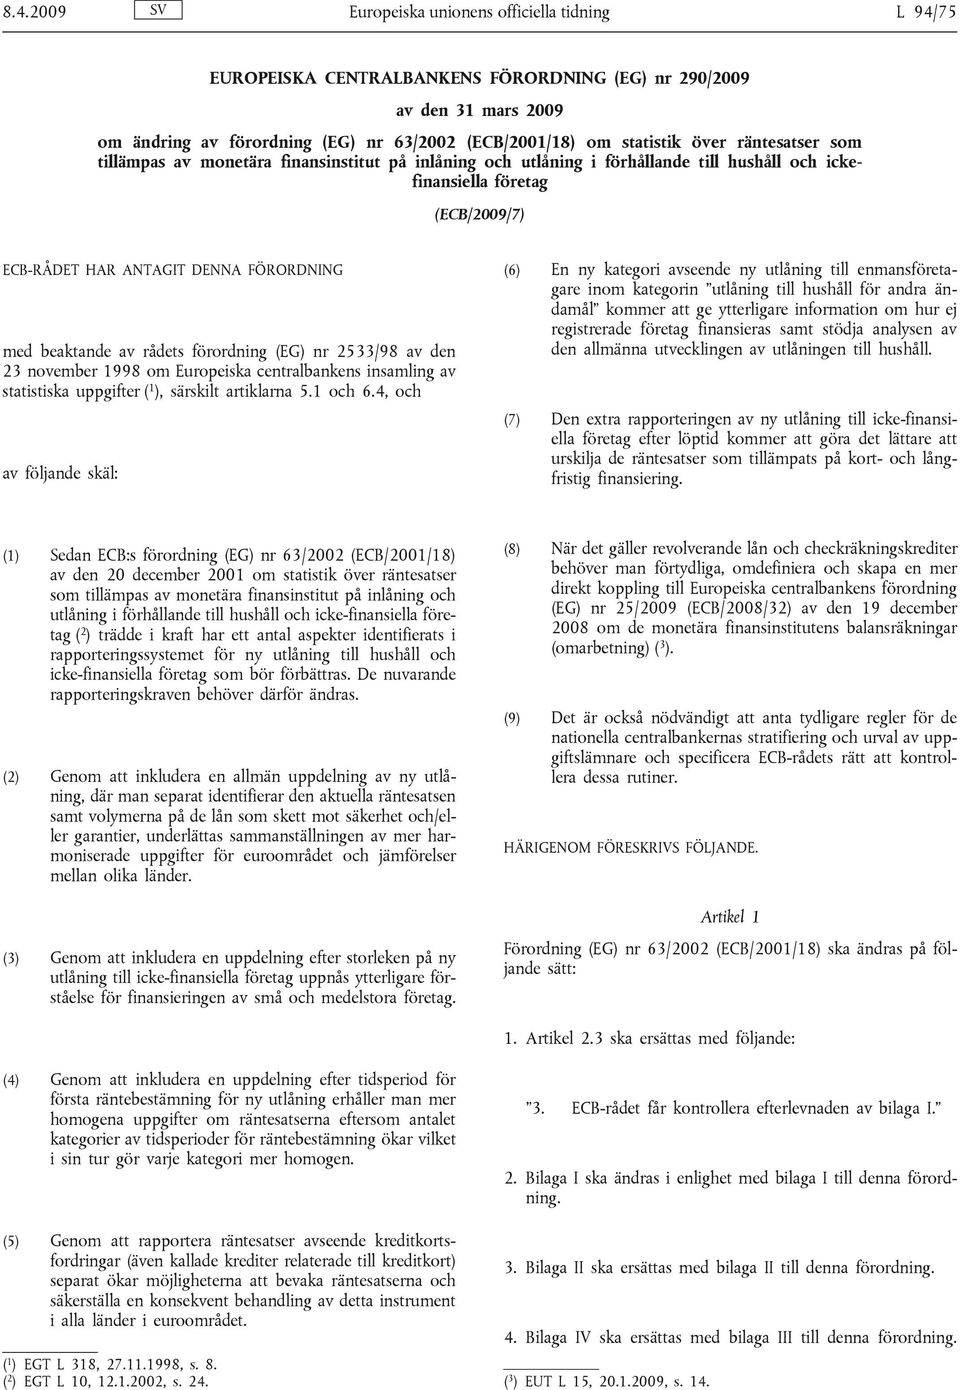 beaktande av rådets förordning (EG) nr 2533/98 av den 23 november 1998 om Europeiska centralbankens insamling av statistiska uppgifter ( 1 ), särskilt artiklarna 5.1 och 6.